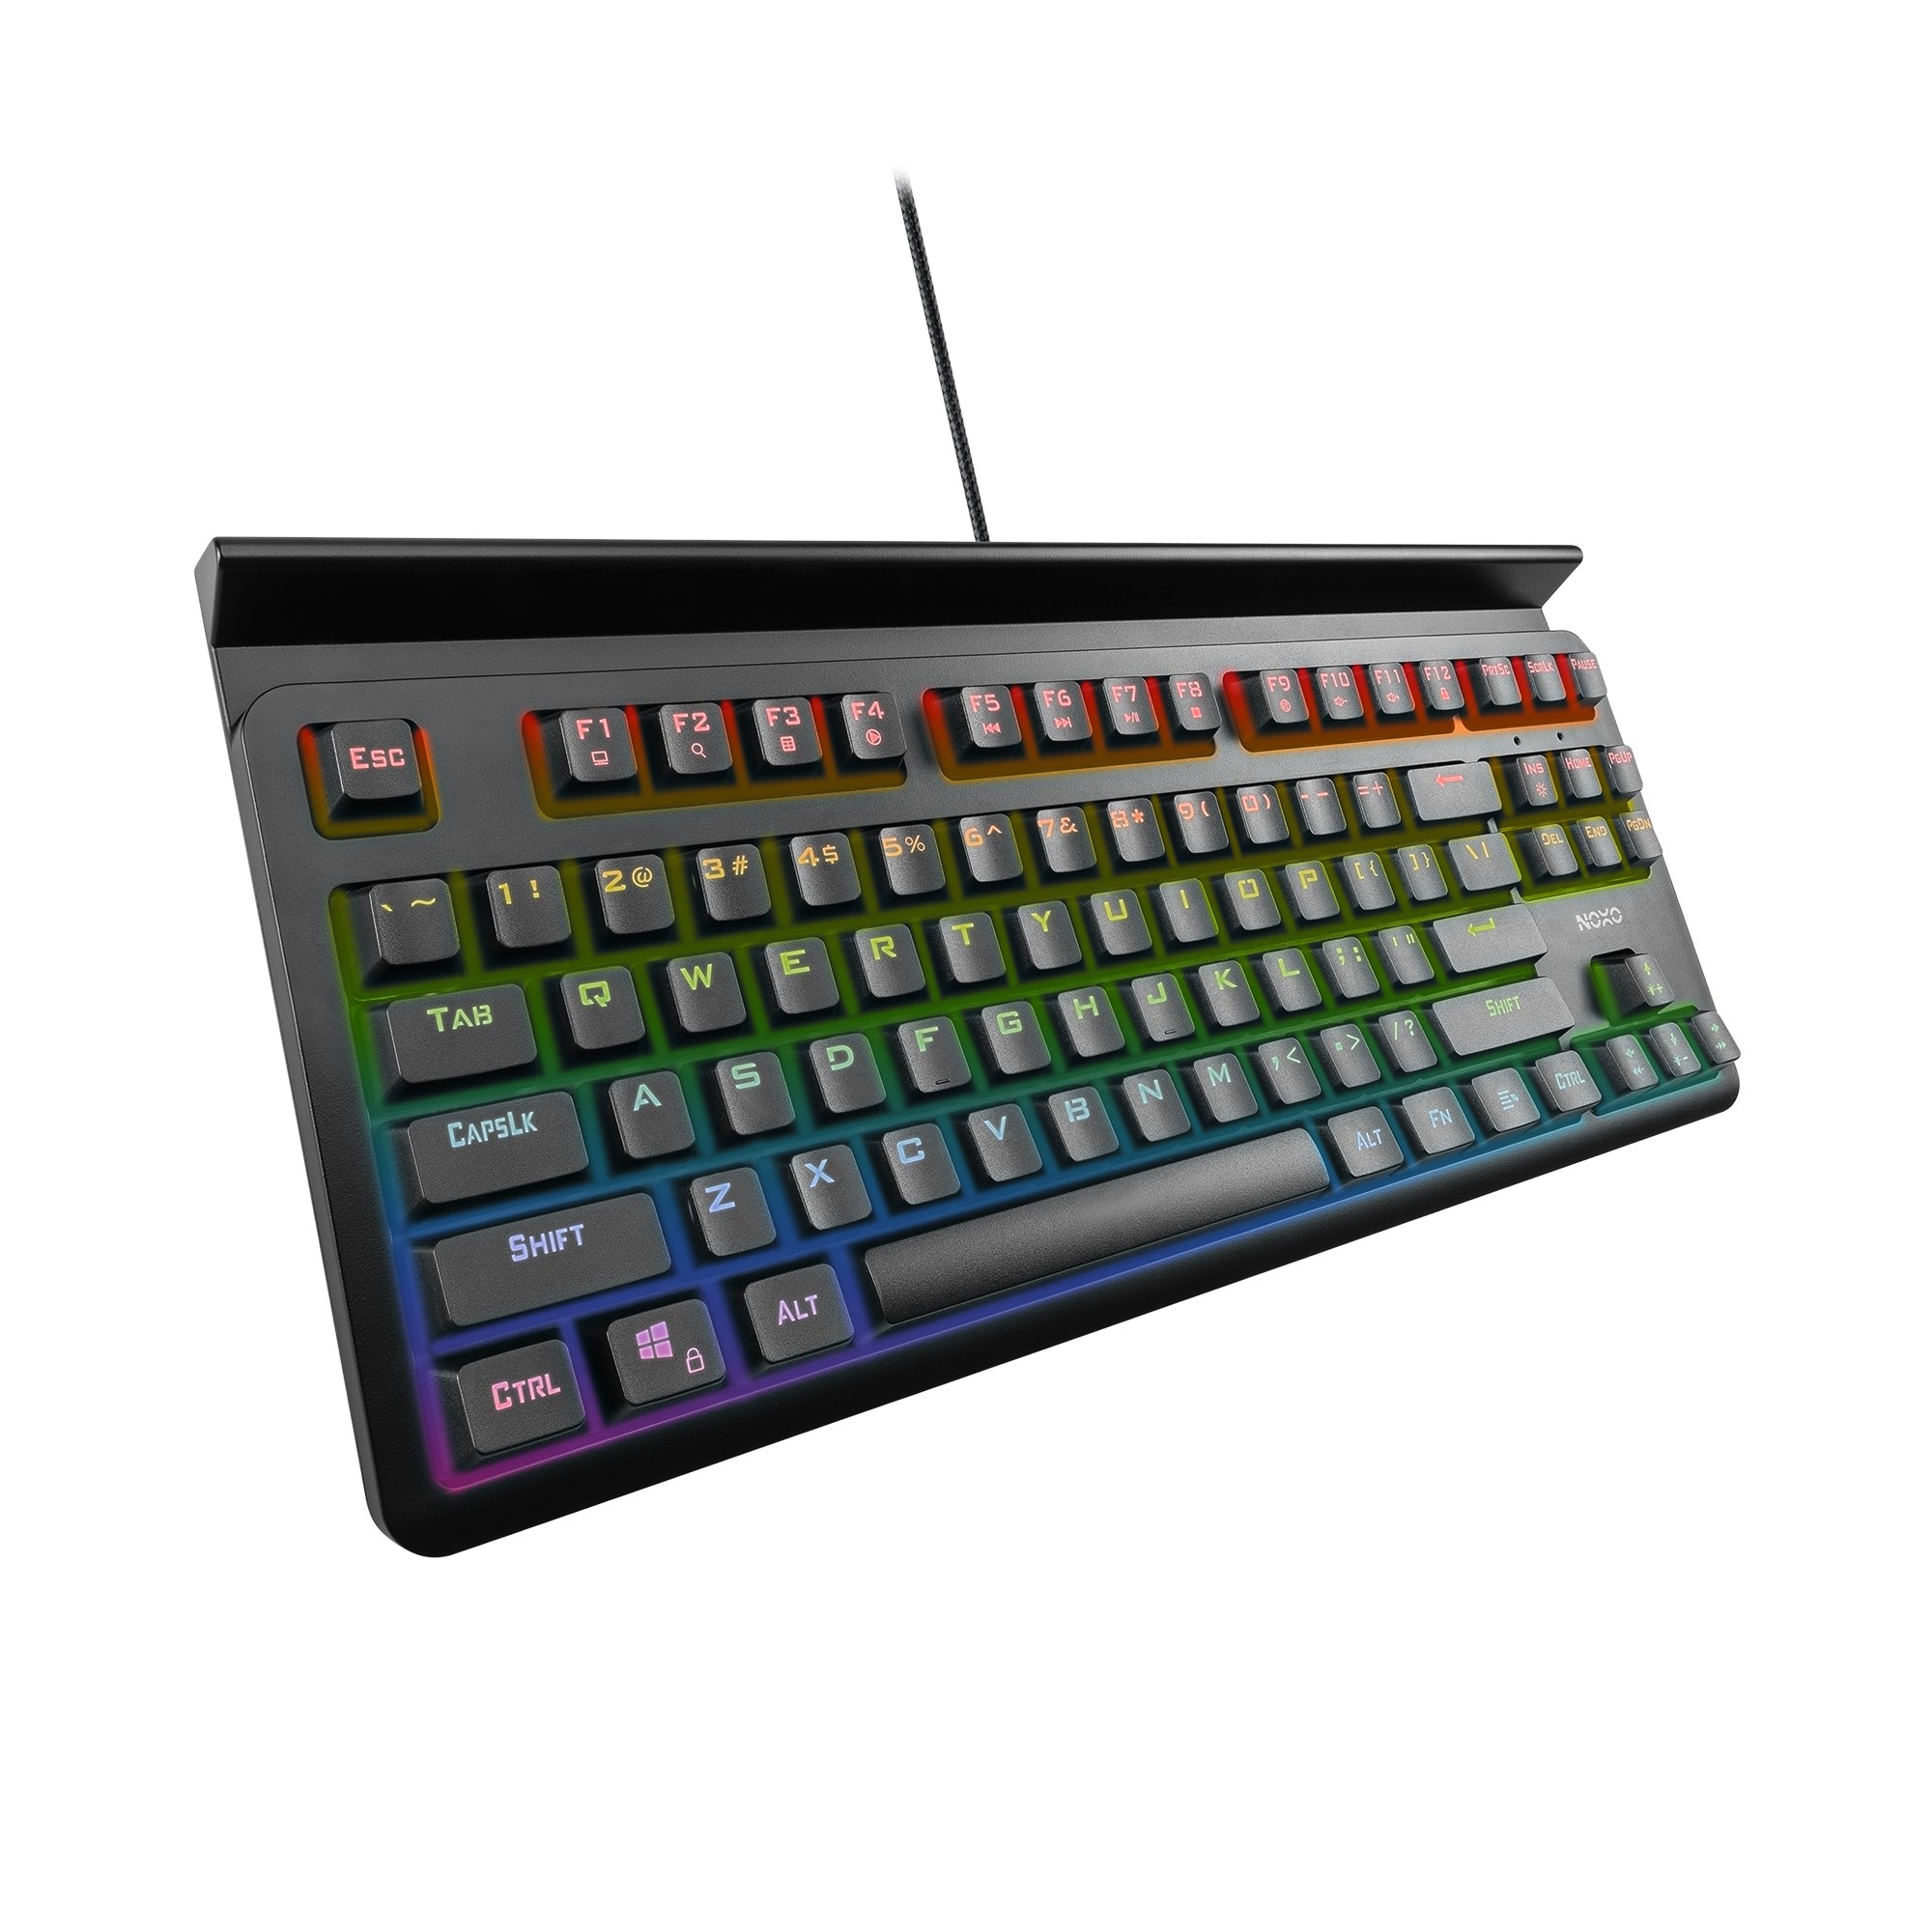 NOXO Specter TKL mehaaniline juhtmega RGB klaviatuur tahvelarvuti/telefonihoidikuga l US, Blue Switch